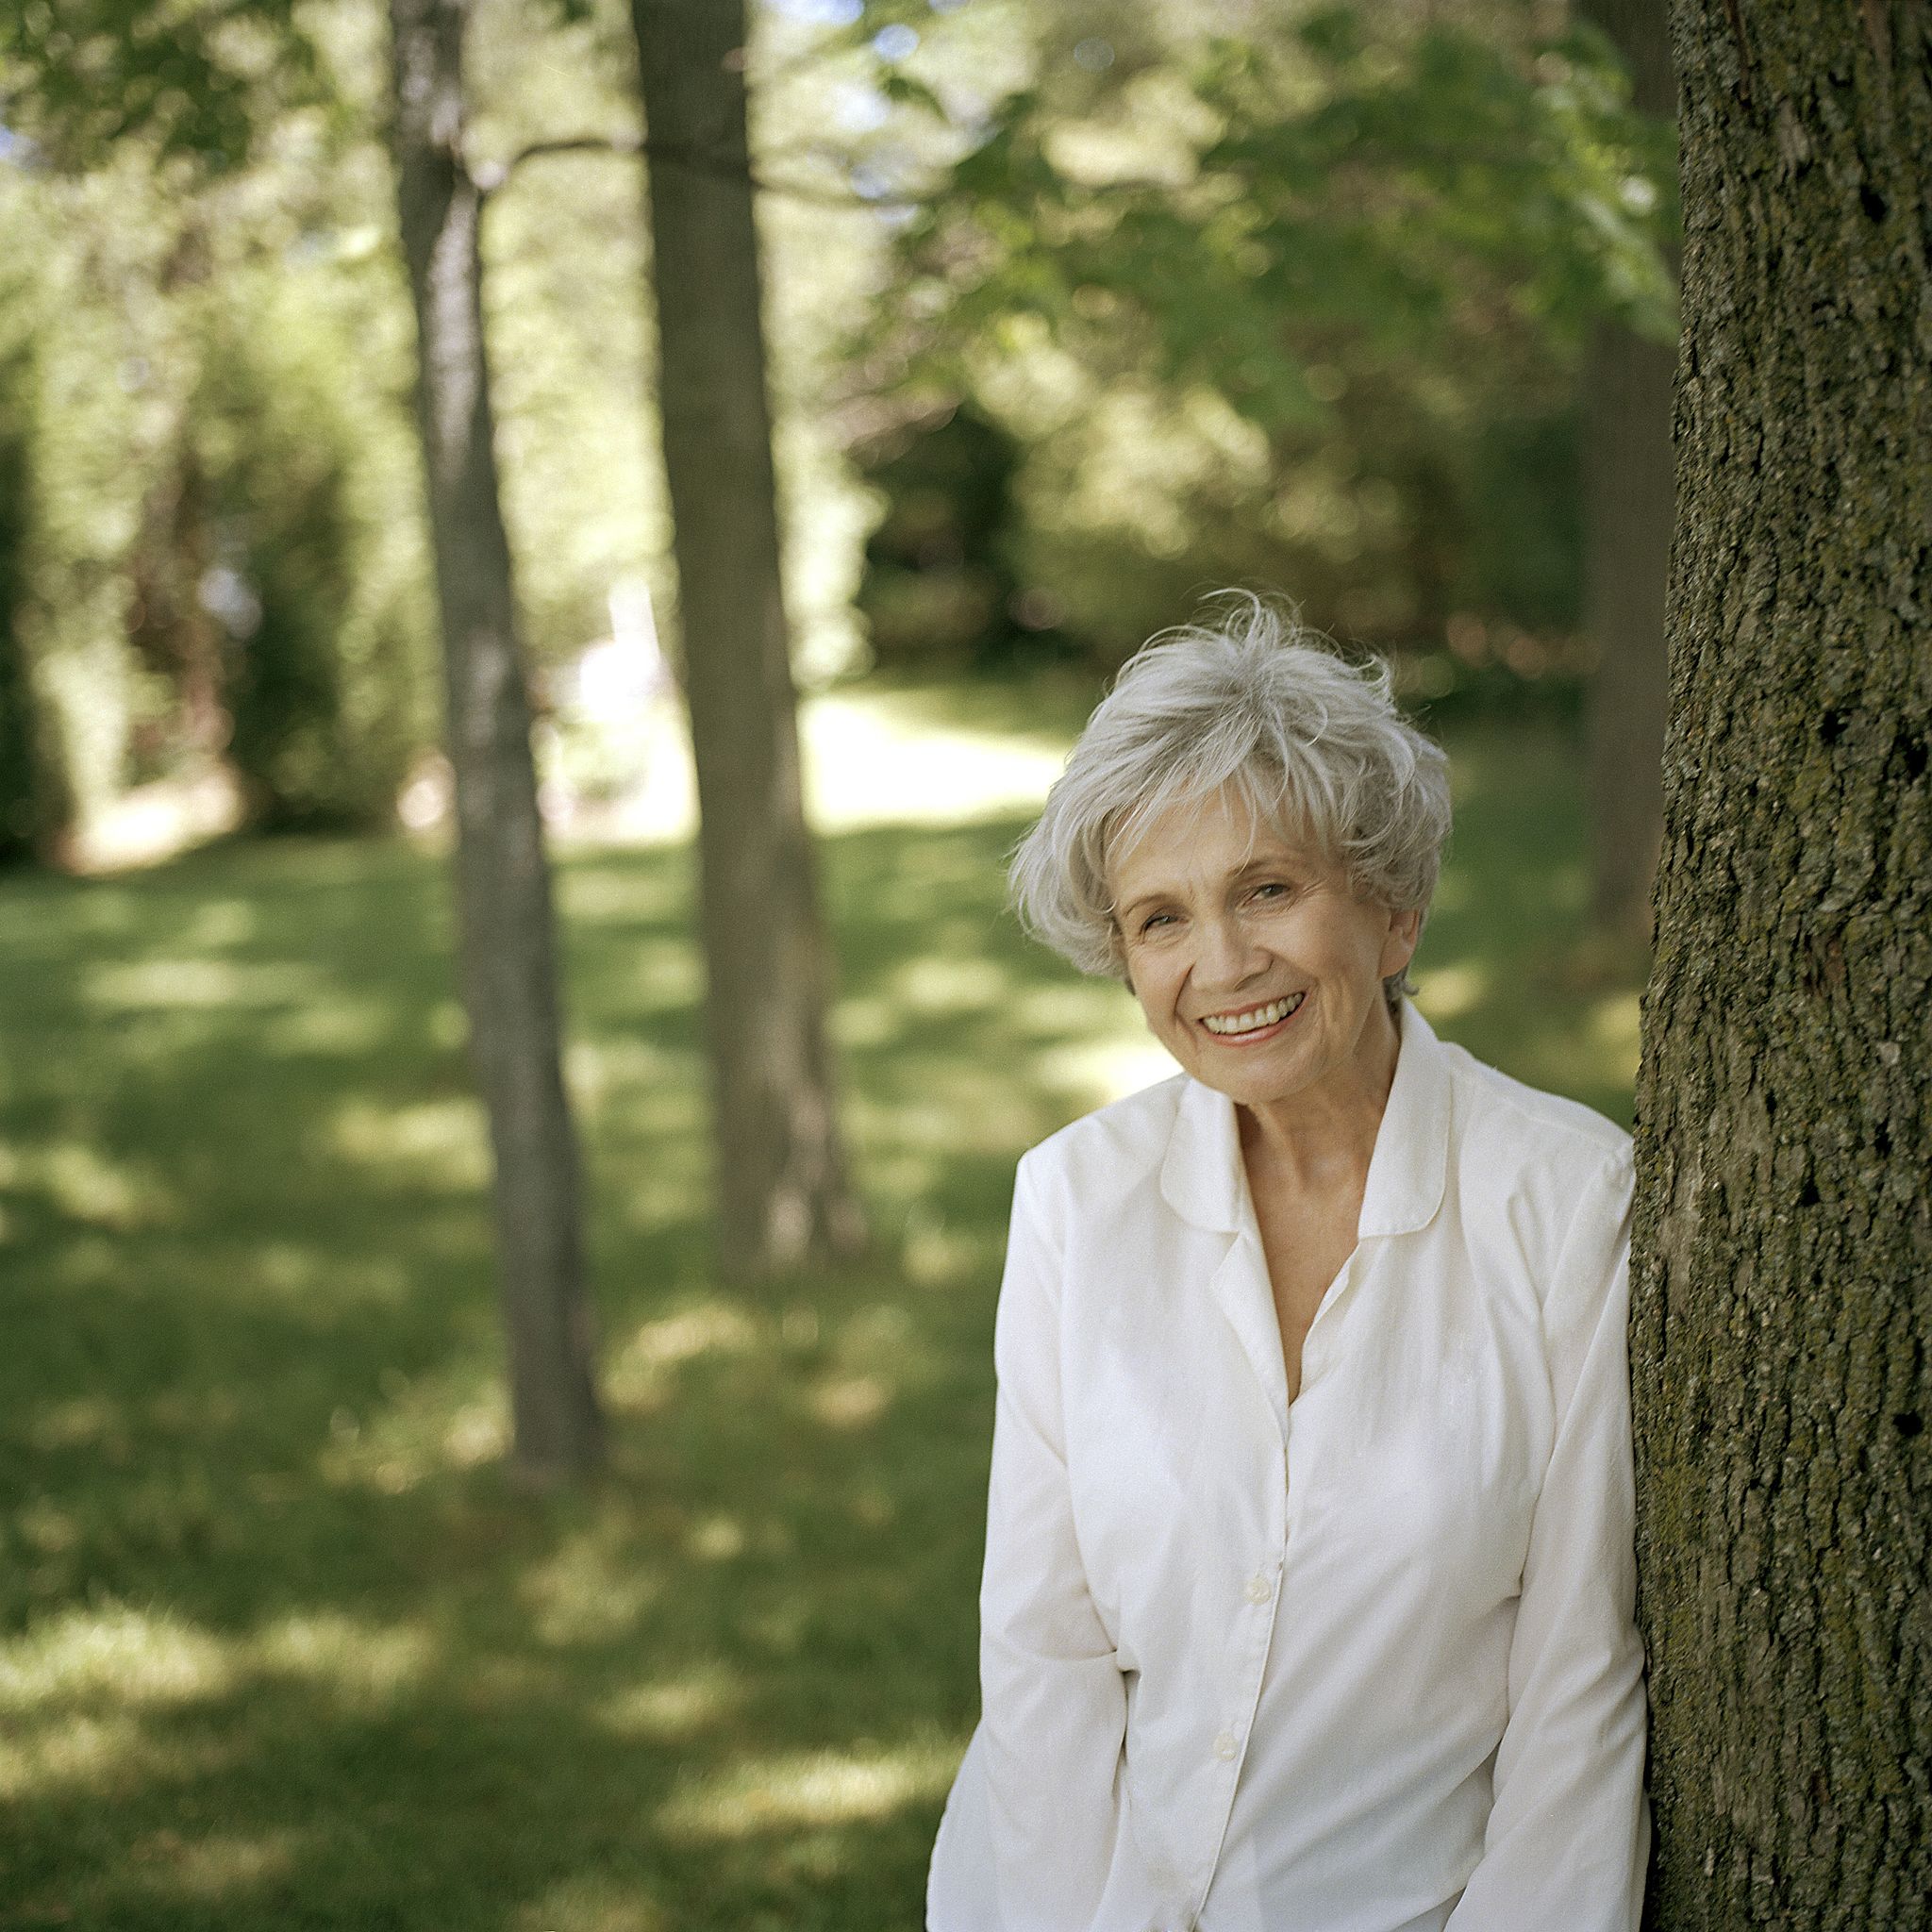 Fotografia de Alice Munro vestida de branco com aproximadamente 70 anos encostada em um árvore em um parque.